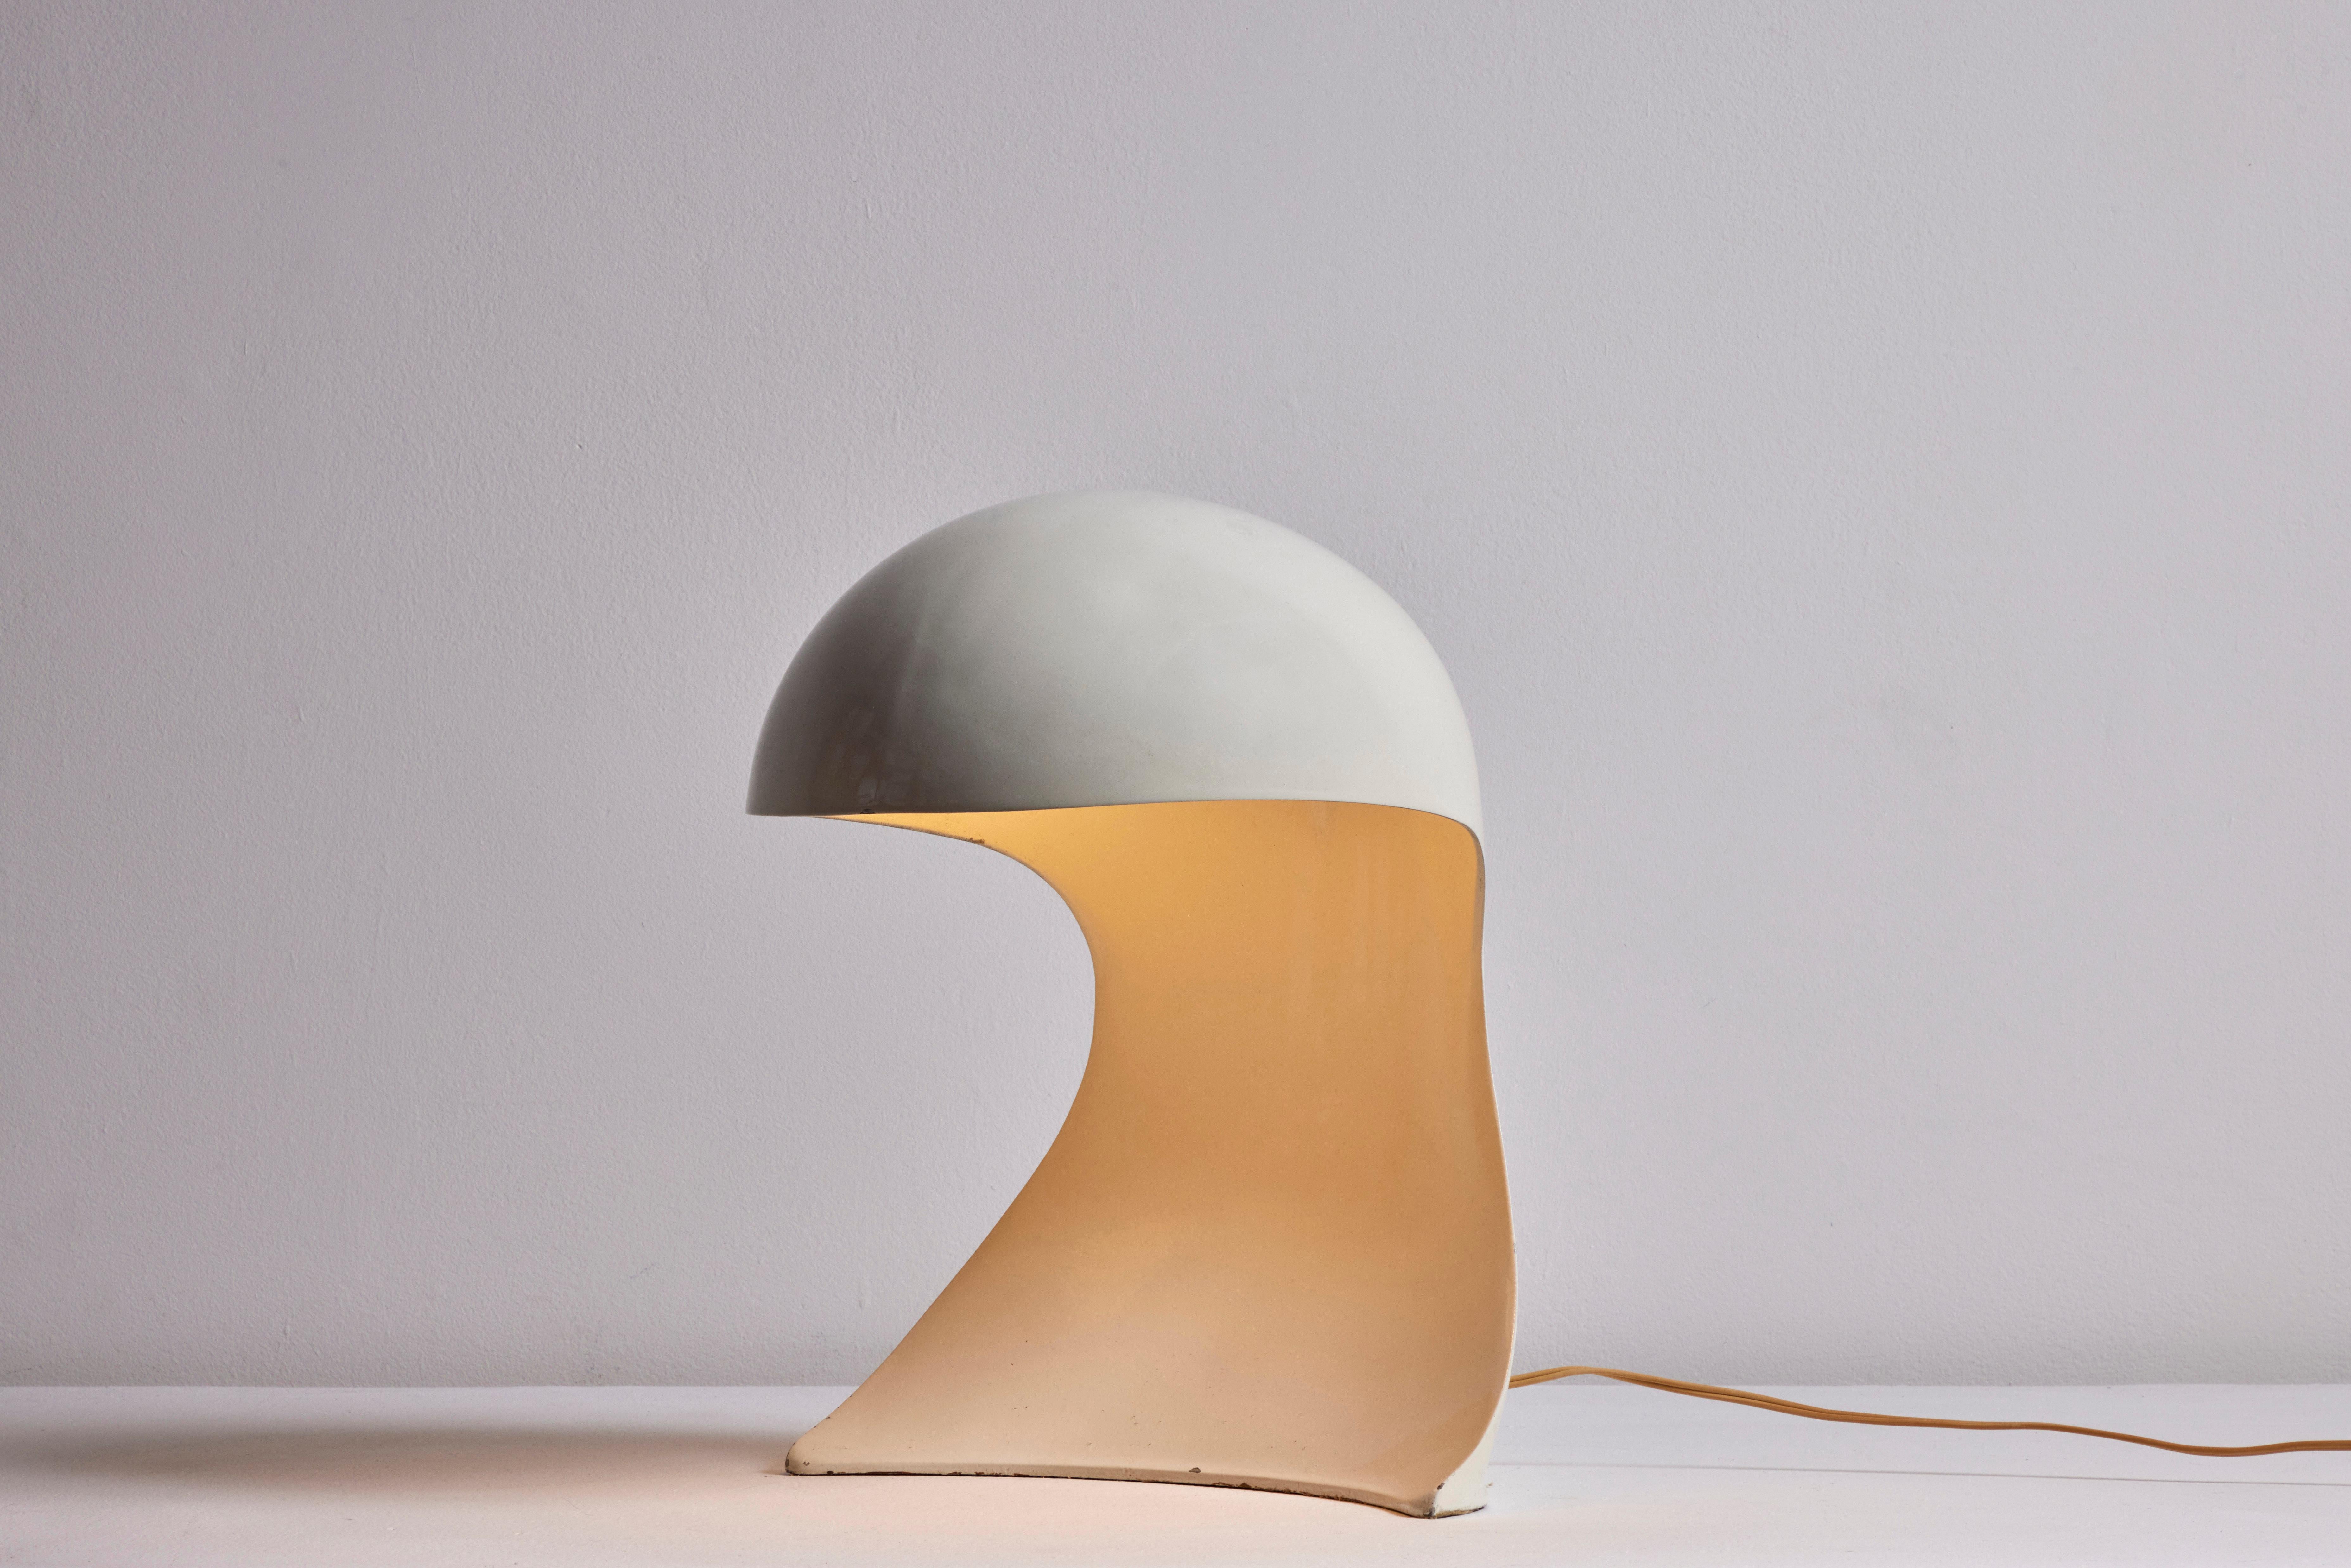 Lampe de table Dania de Dario Tognon et Studio Celli pour Artemide. Fabriqué en Italie, vers les années 1960. Métal émaillé, cordon européen d'origine. Nous recommandons une ampoule E27 60w maximum. Ampoule non incluse.